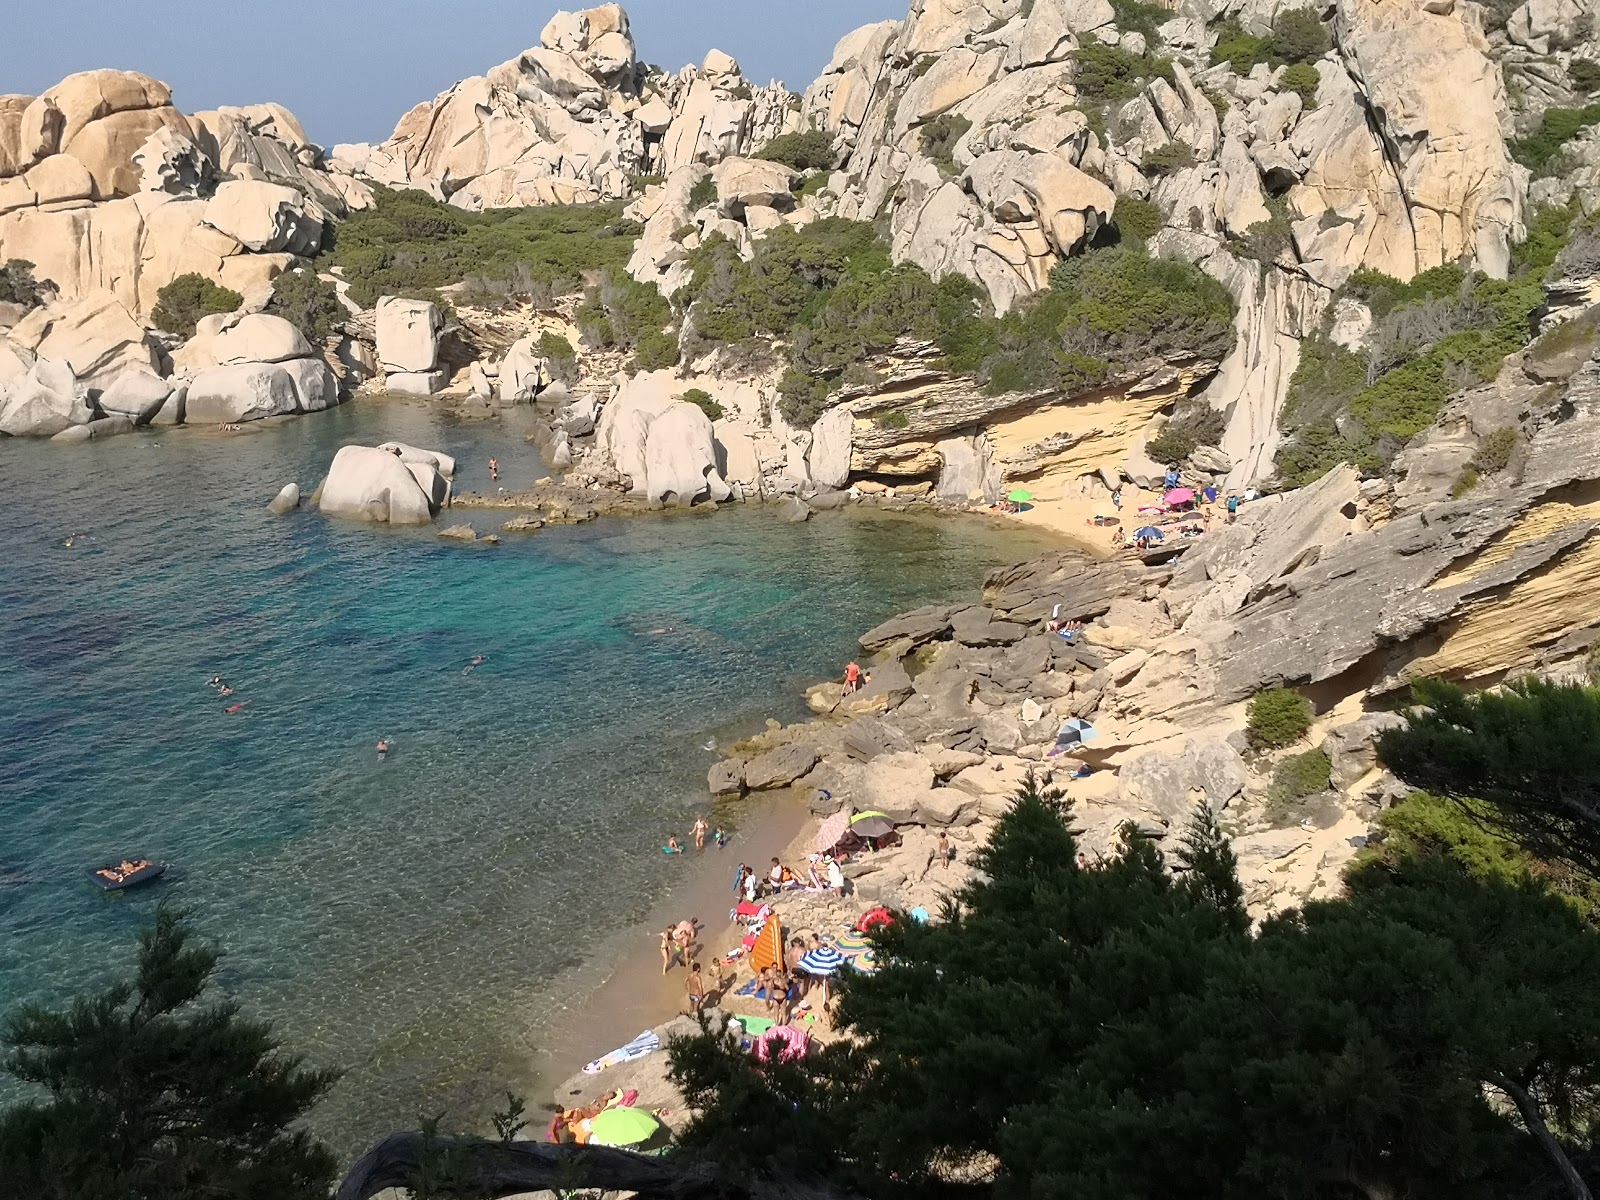 Photo of Spiaggia di Cala Spinosa located in natural area